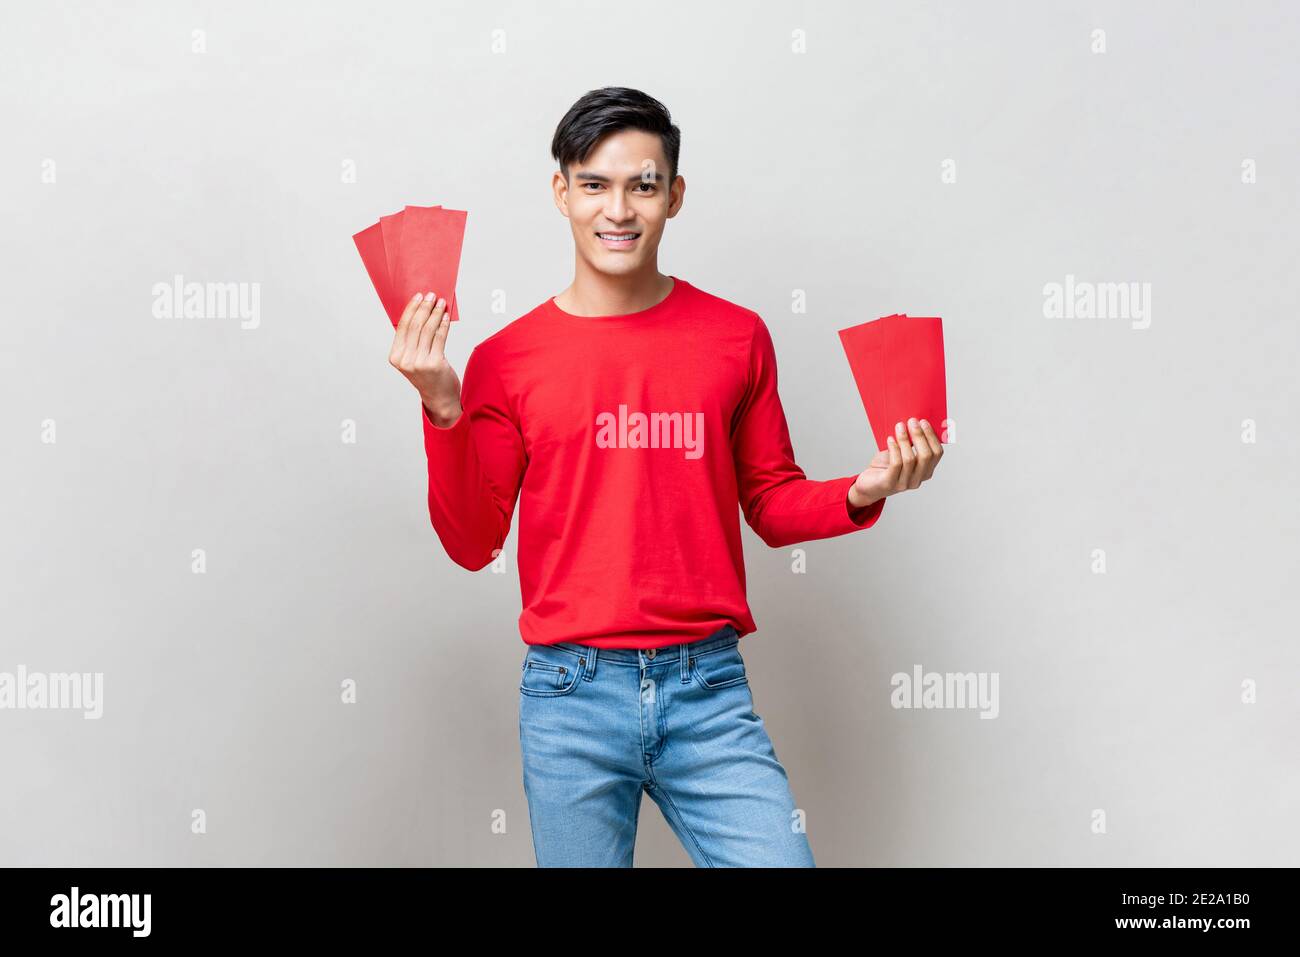 Lächelnd schöner asiatischer Mann mit roten Umschlägen oder Ang Pao Im Studio isolierter grauer Hintergrund für chinesische Neujahrs-Konzepte Stockfoto